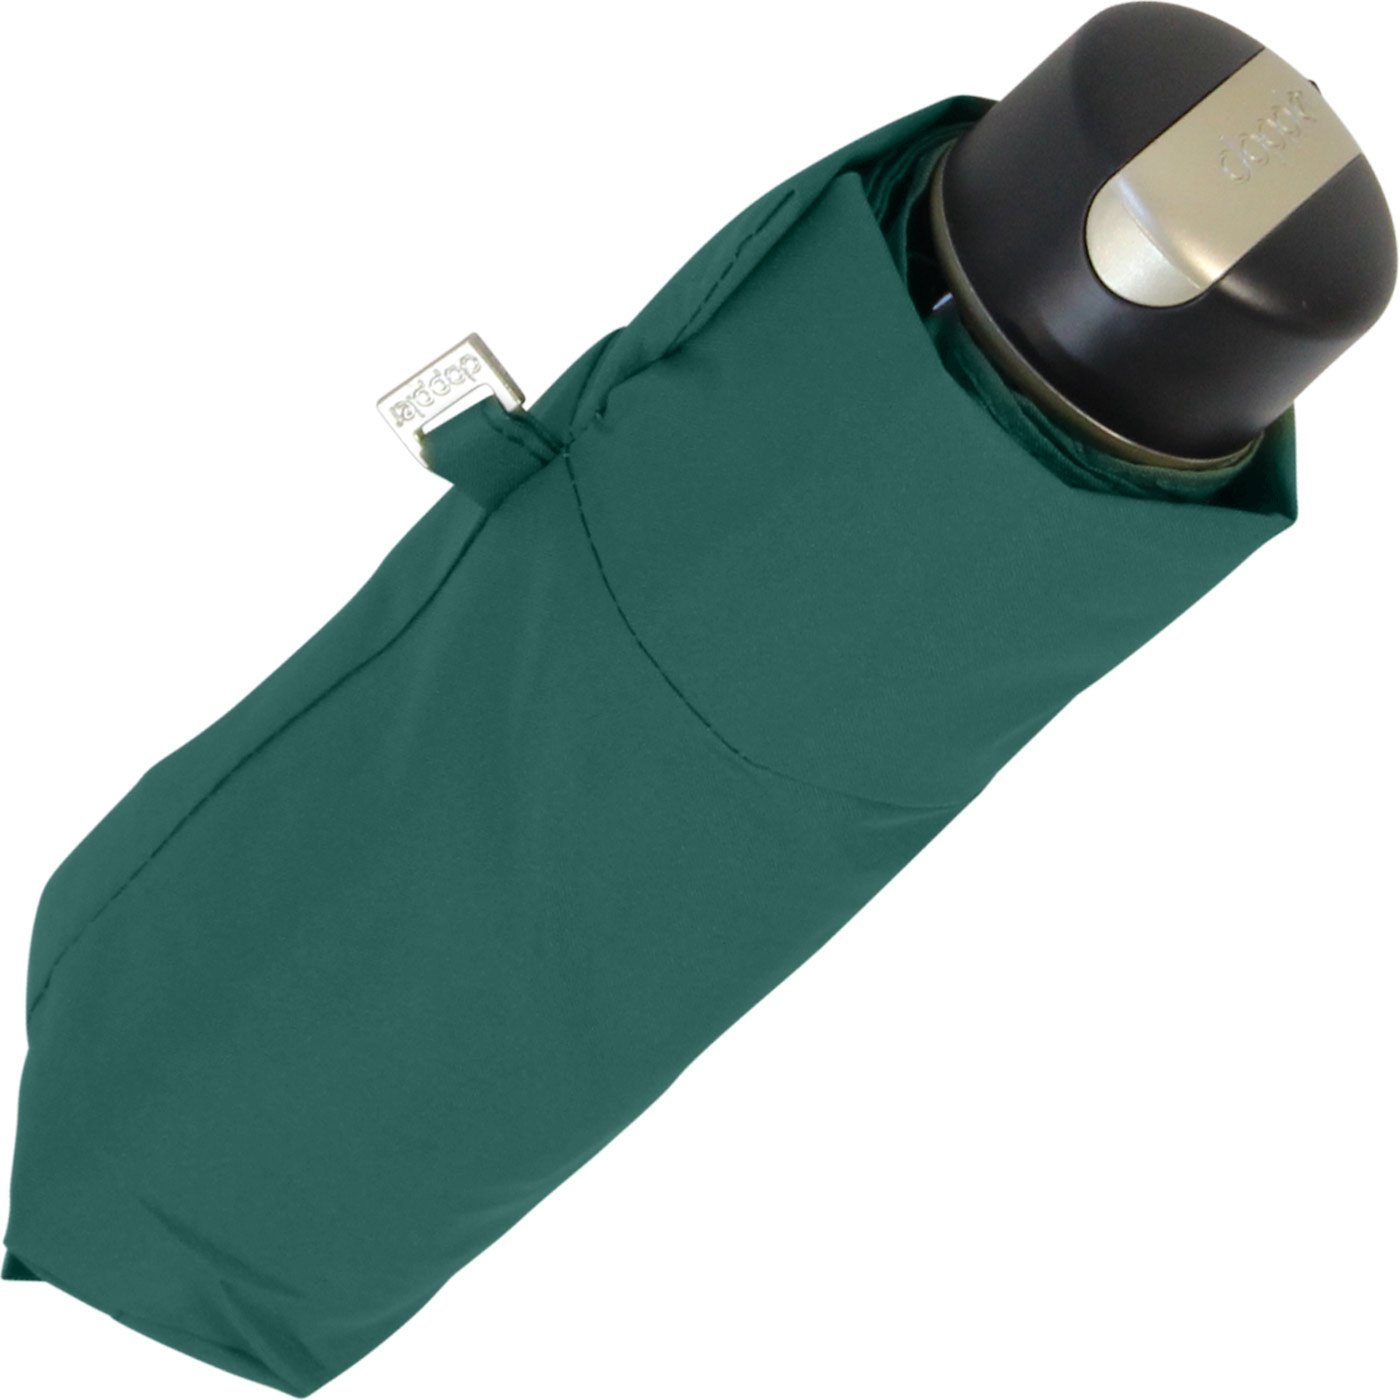 klein, Taschenregenschirm und Mini XS Carbonsteel verstauen leicht zu kompakt, doppler® Begleiter, der treue leicht